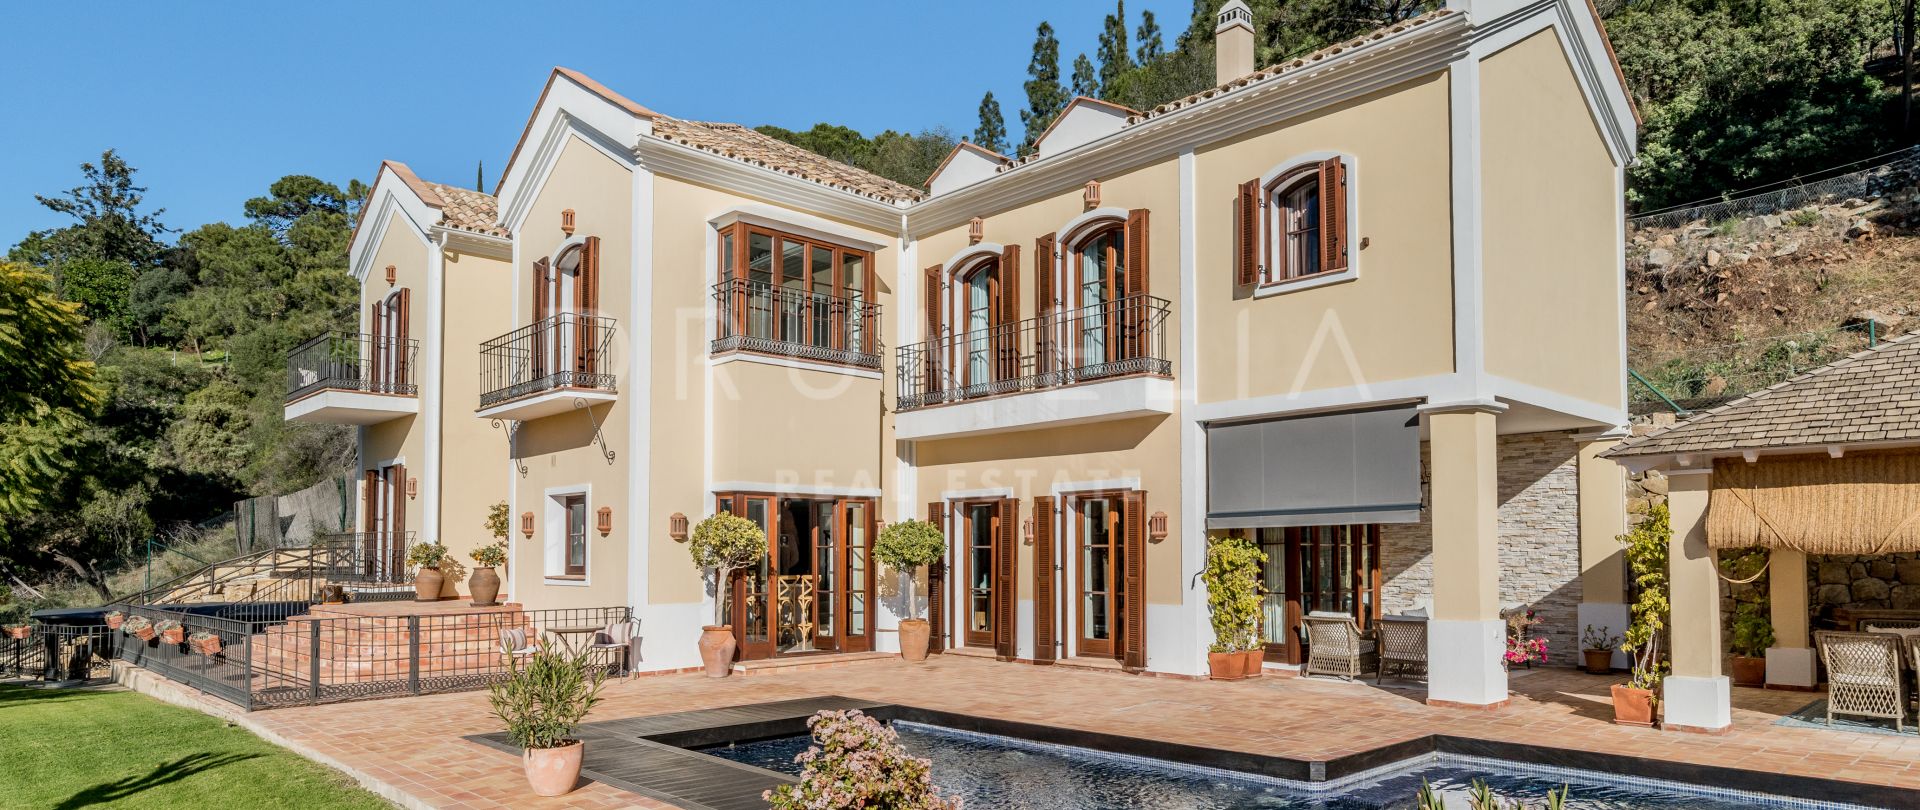 Preciosa villa familiar de lujo de estilo mediterráneo con encanto sureño en El Madroñal, Benahavís